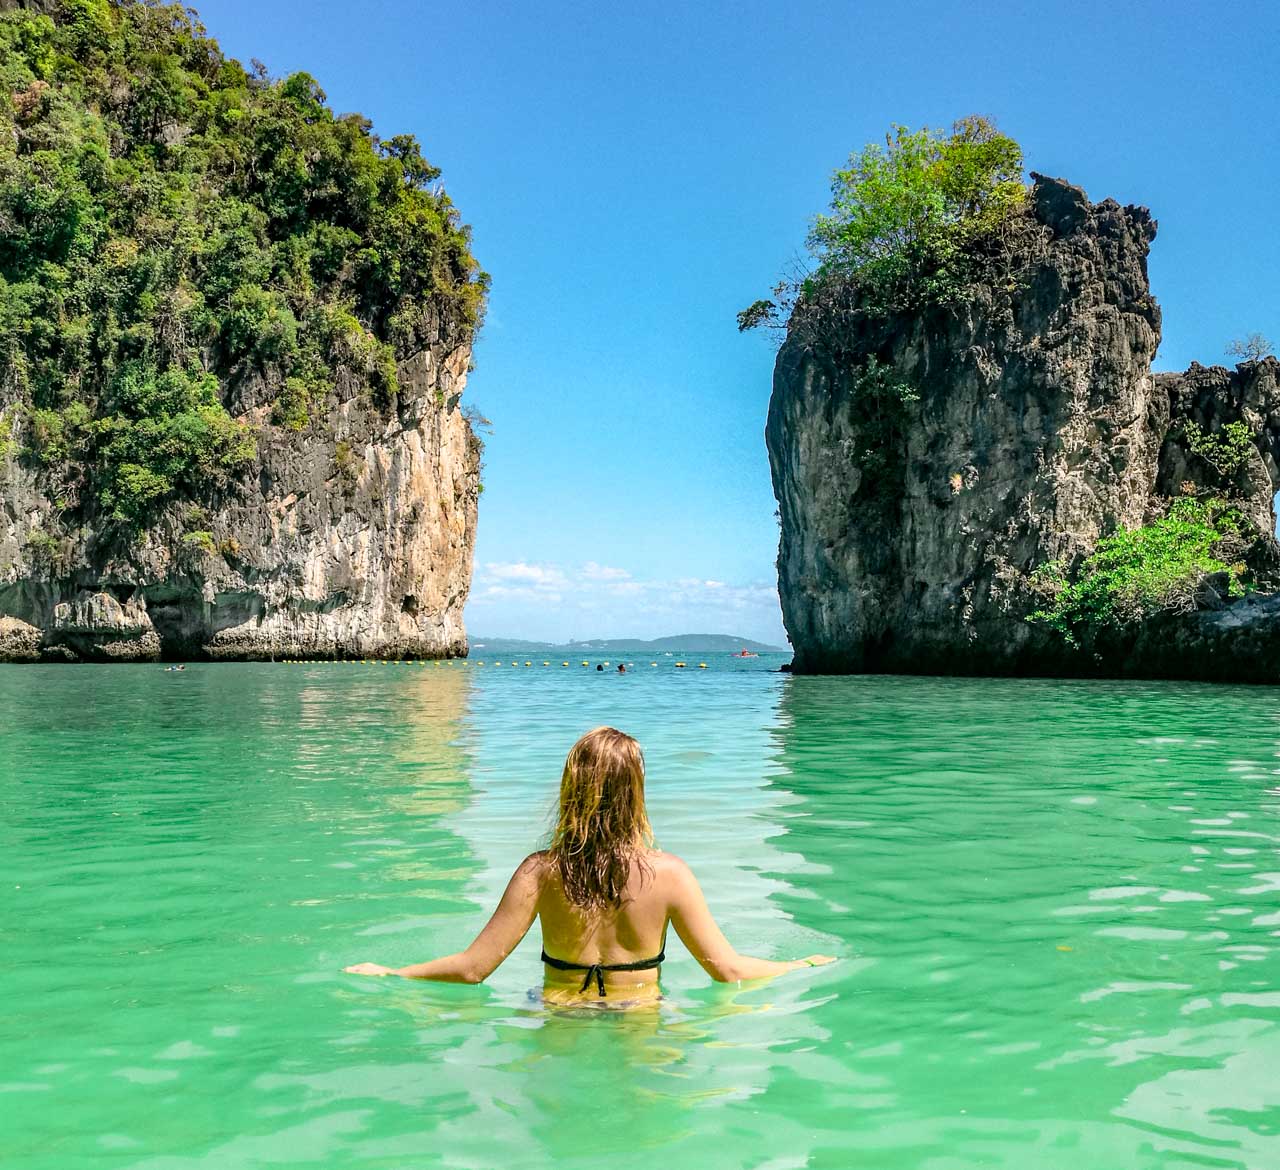 Nós imaginamos a vontade que está de viajar para a Tailândia e ver uma paisagem maravilhosa assim!